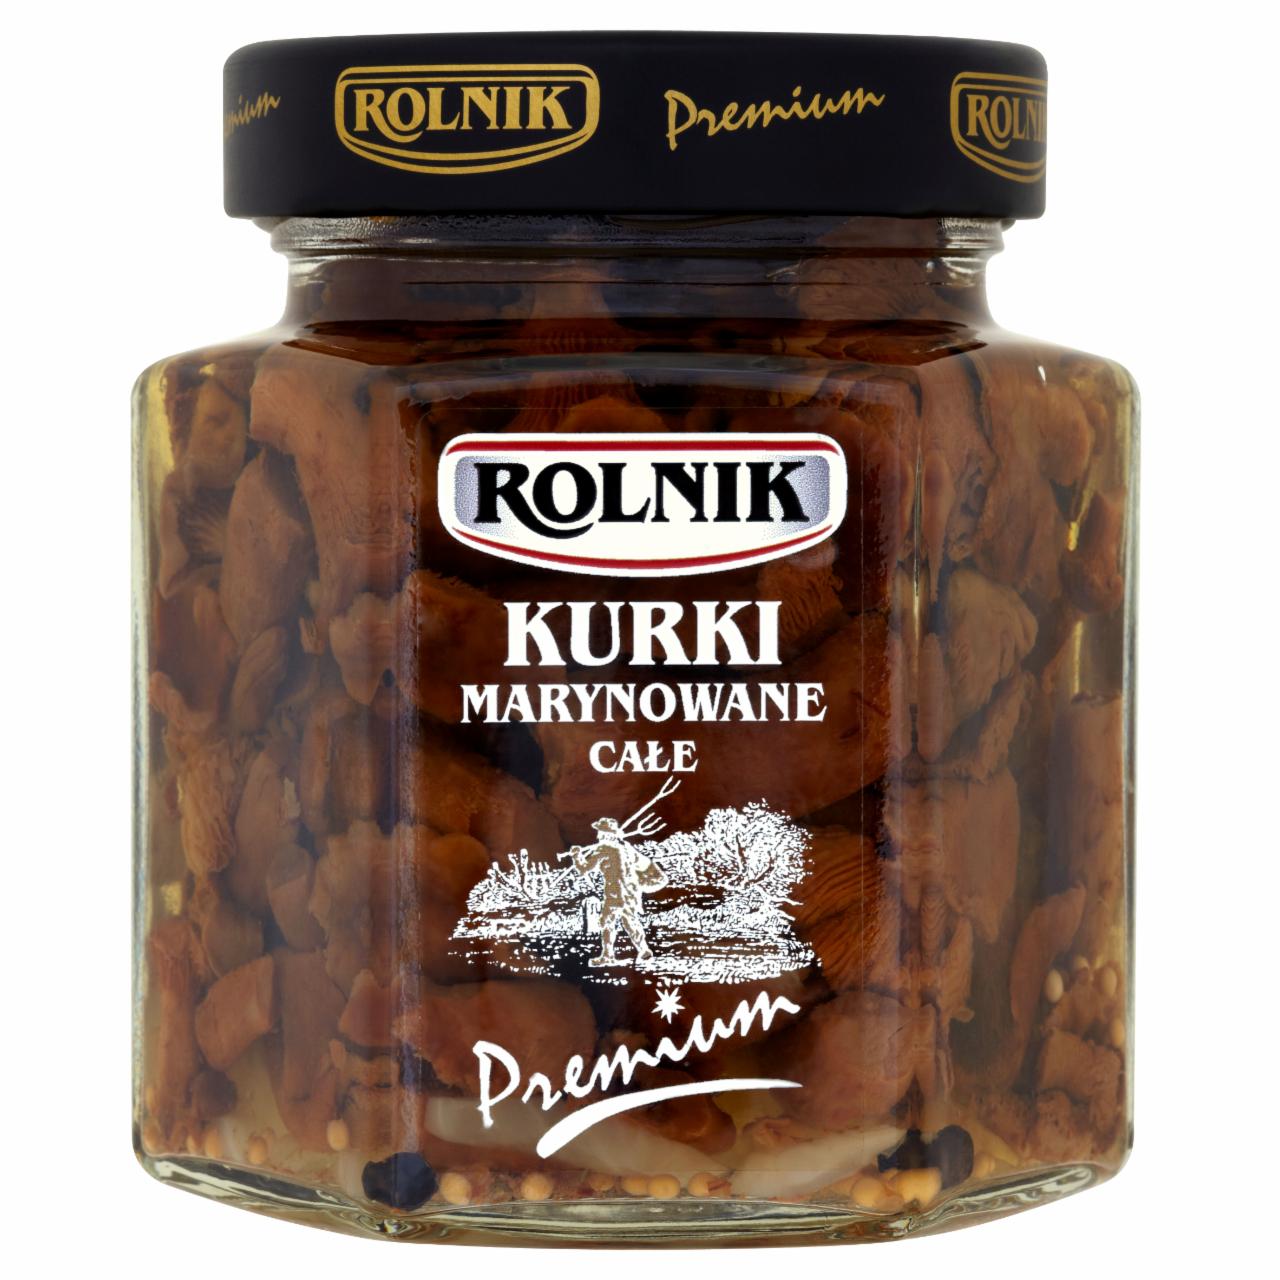 Zdjęcia - Rolnik Premium Kurki marynowane całe 300 g